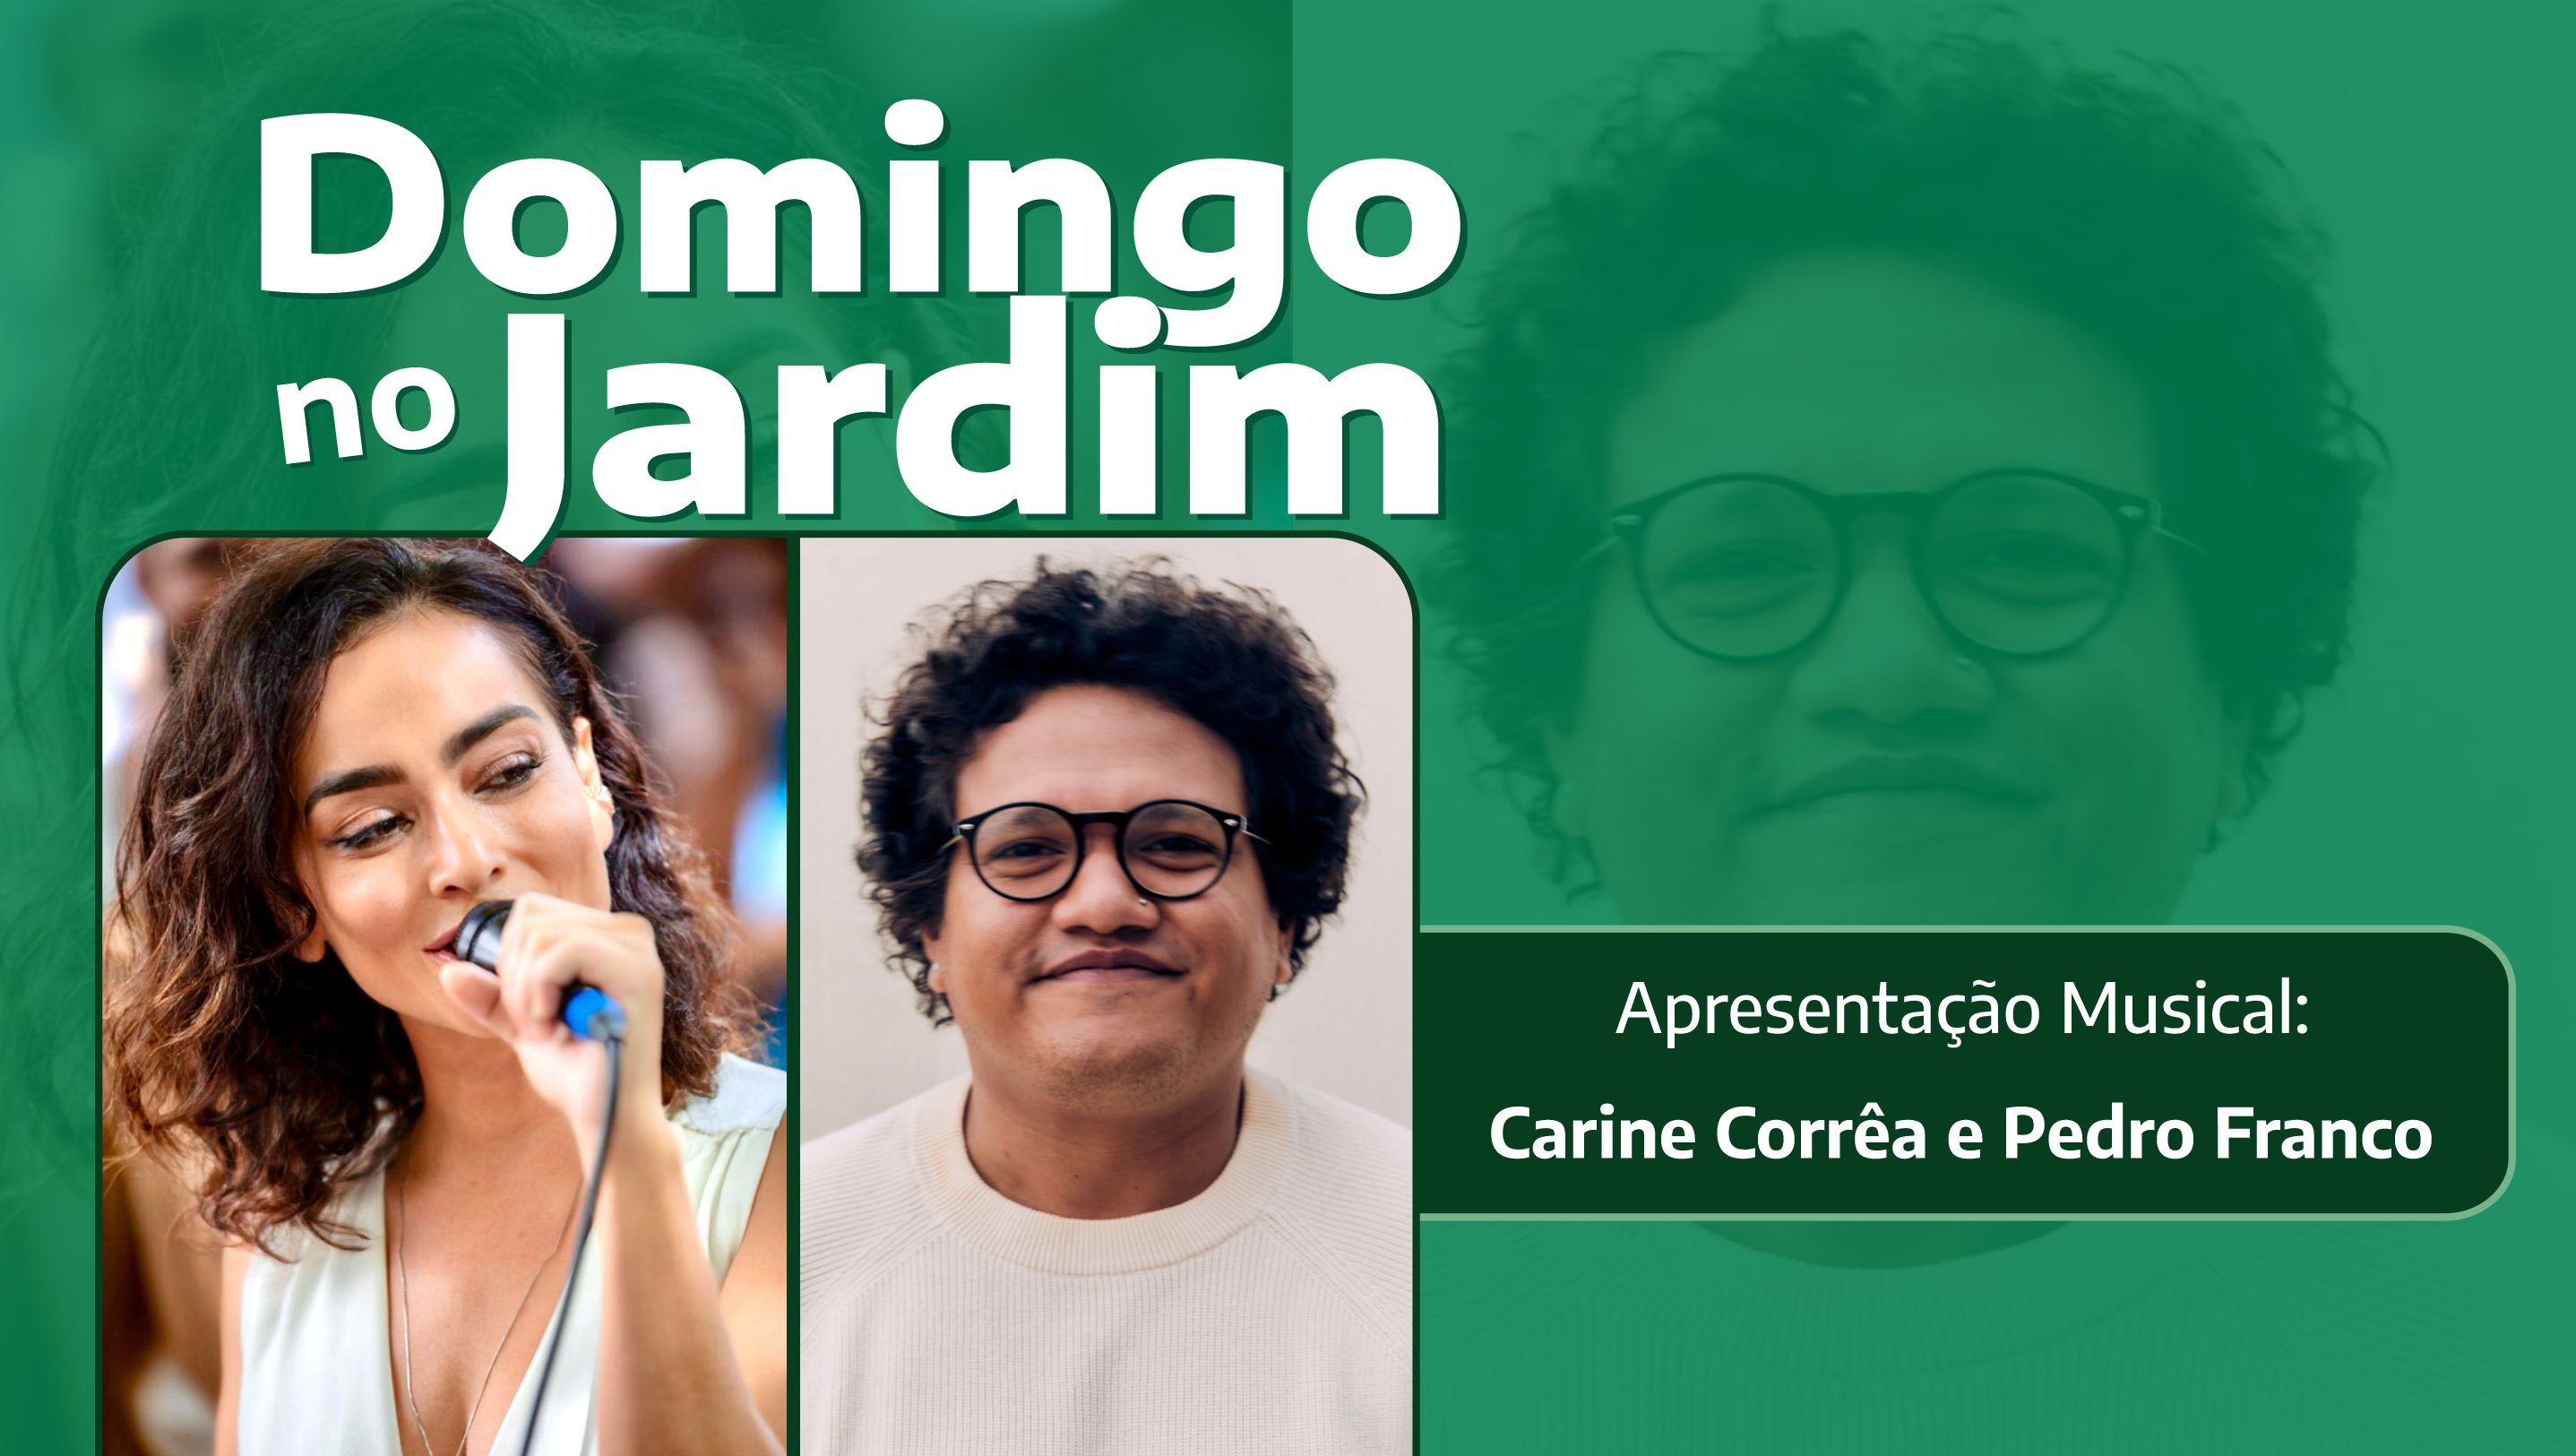 Carine Corrêa e Pedro Franco darão show no Domingo no Jardim em 21/4